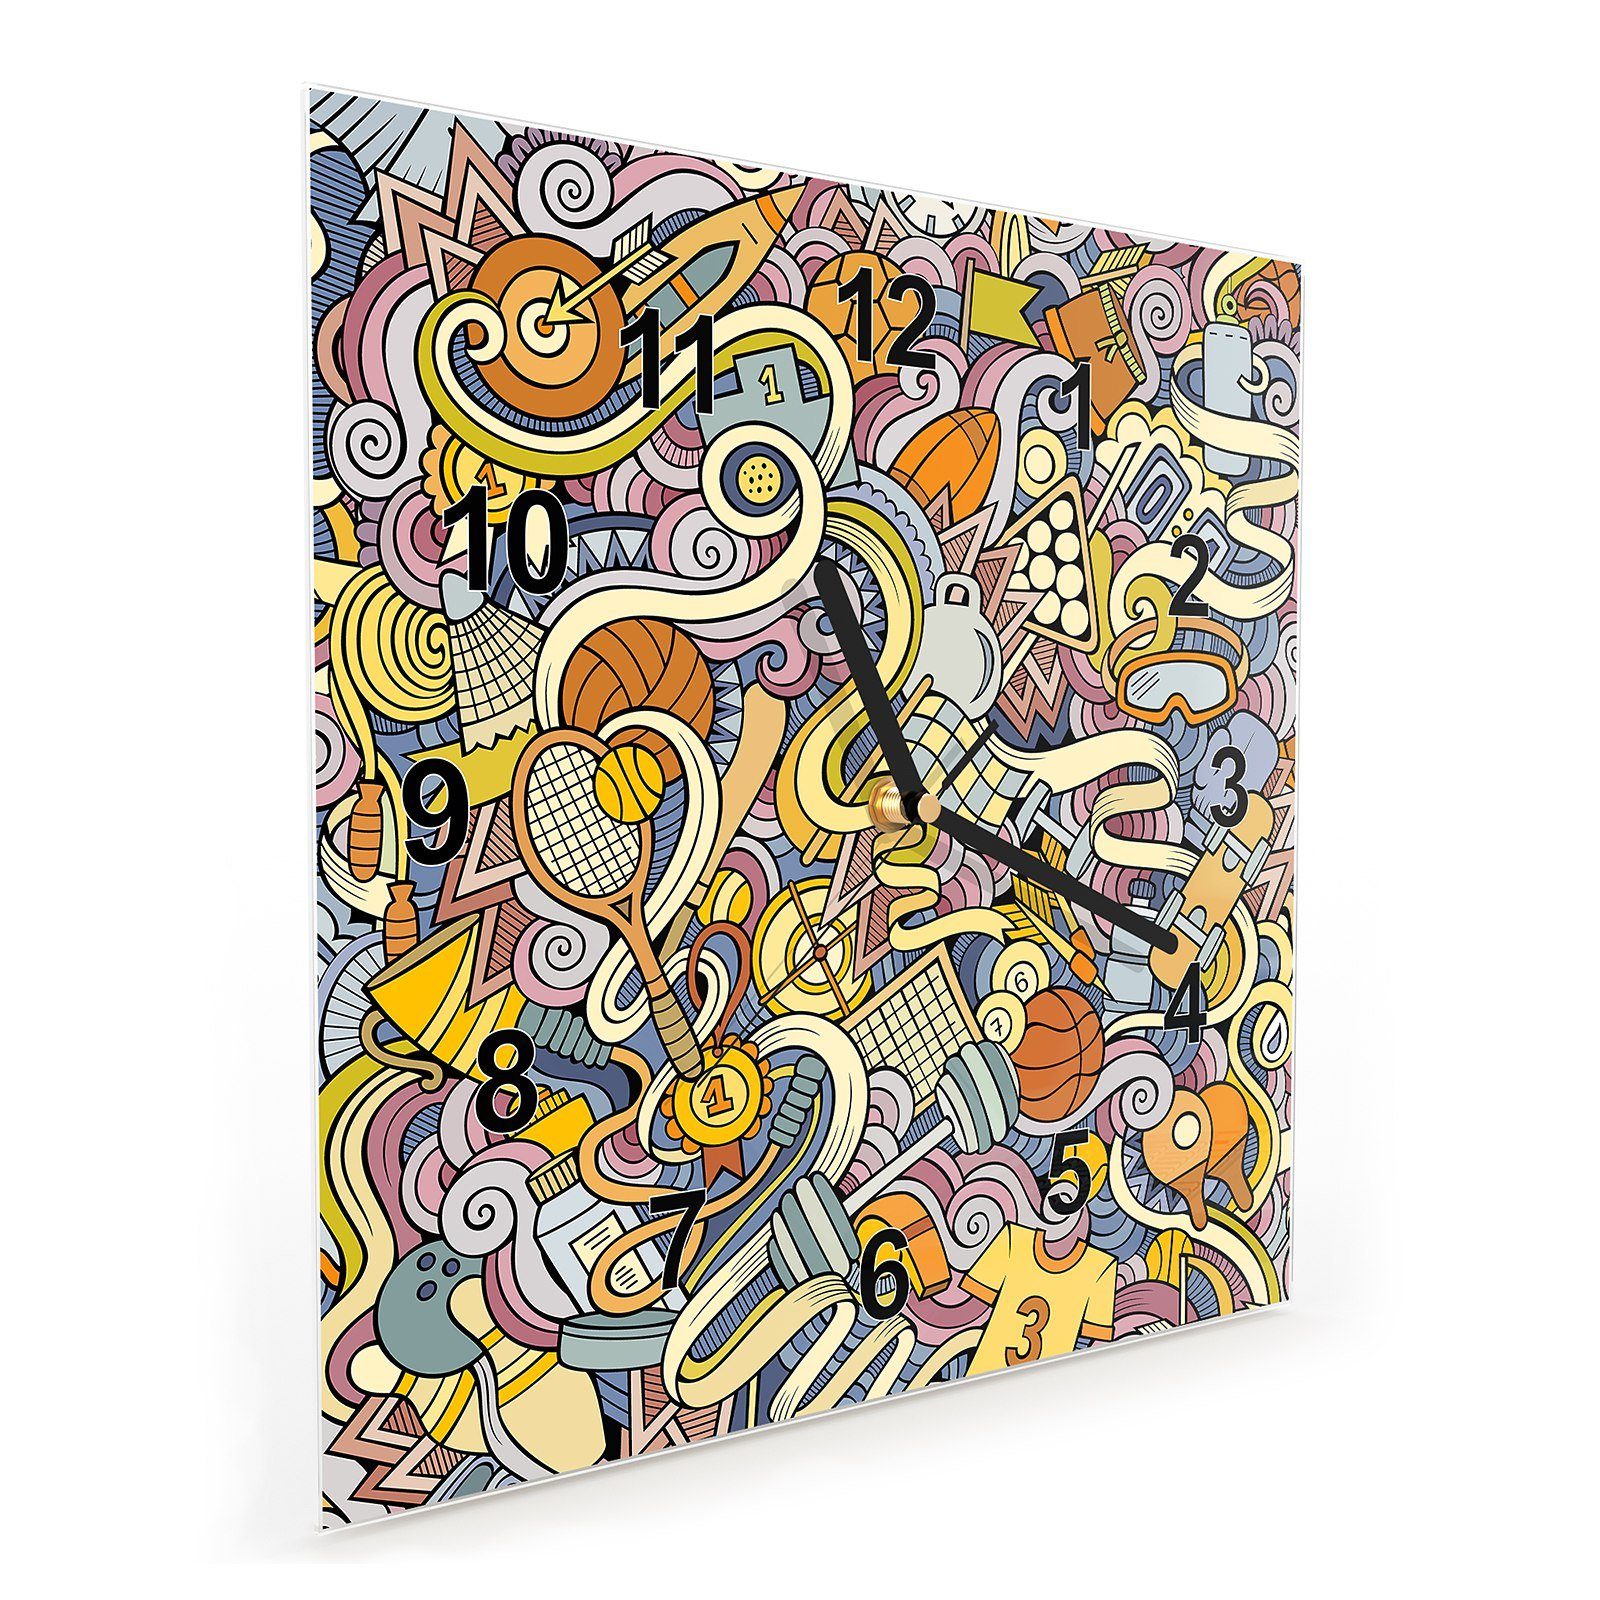 Motiv 30 cm Größe Primedeco Wanduhr Wanduhr x Abstraktes Muster 30 Wandkunst mit Glasuhr